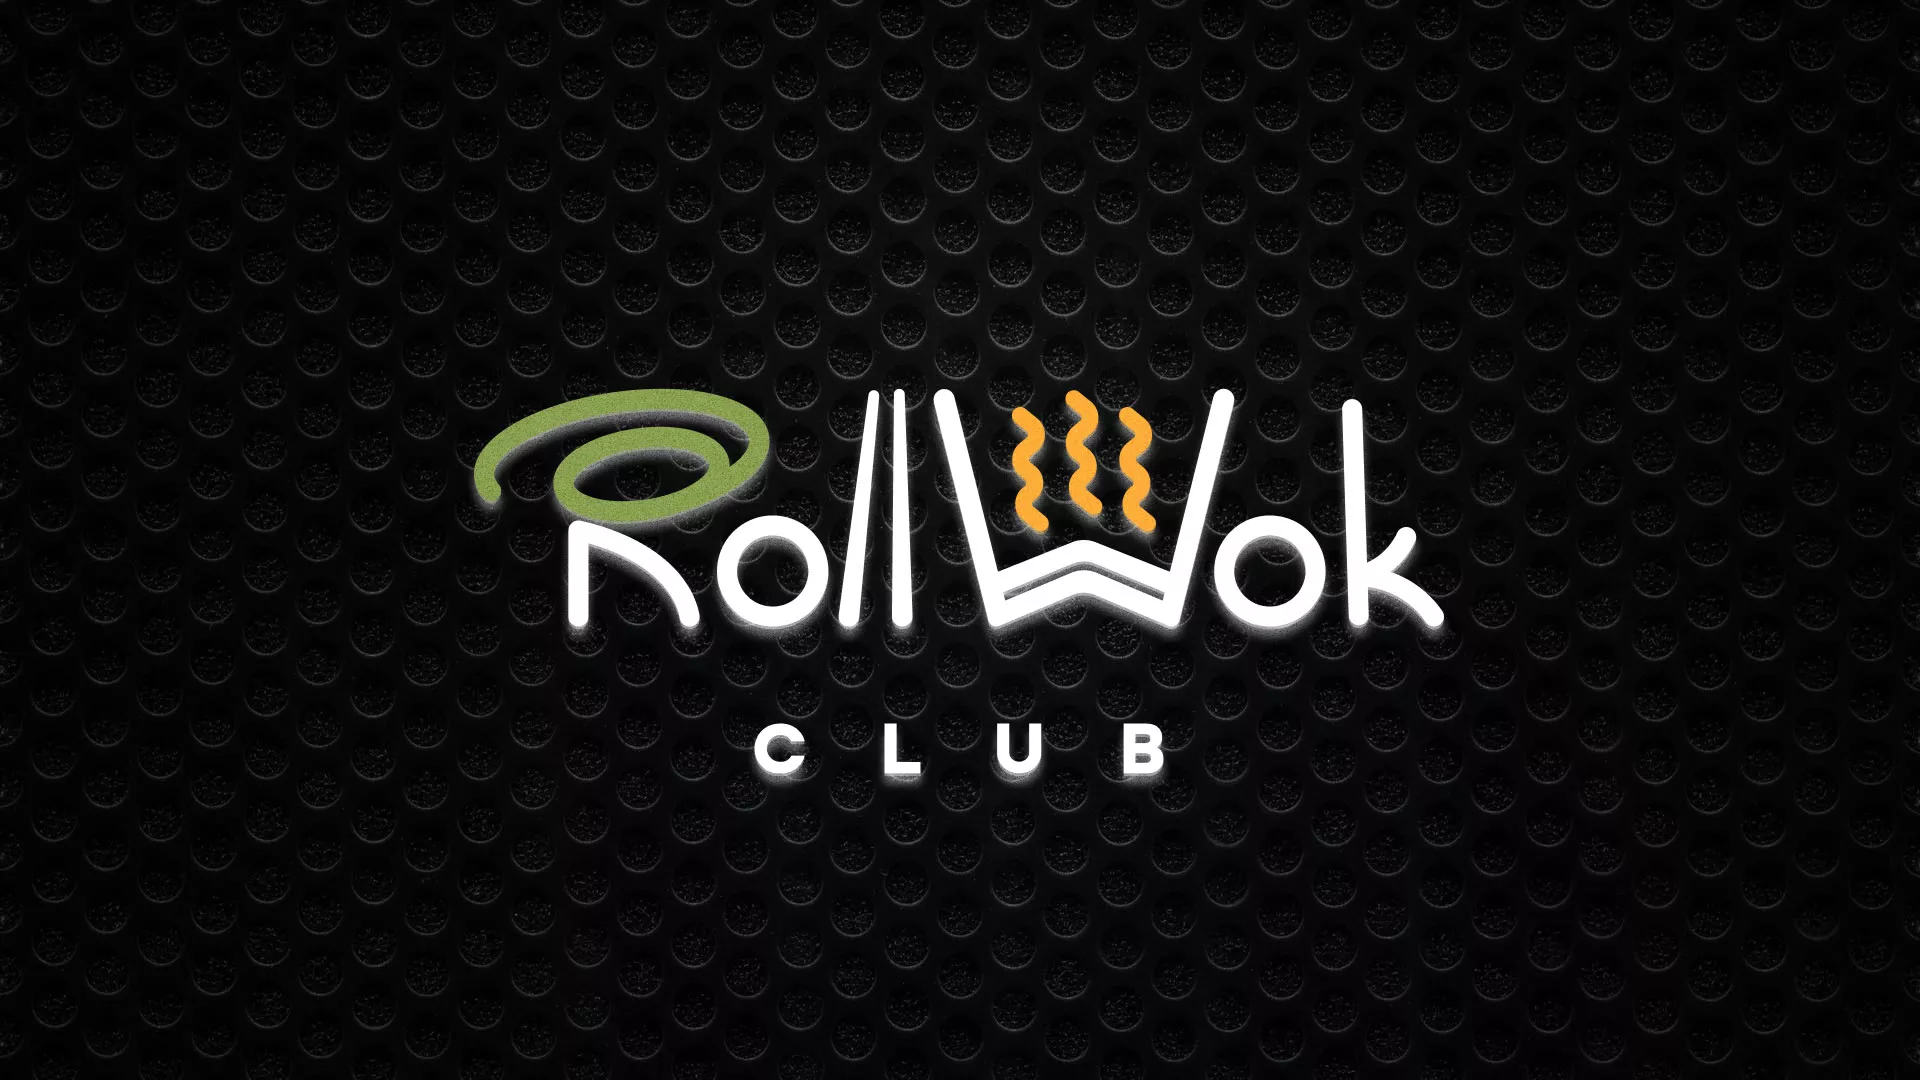 Брендирование торговых точек суши-бара «Roll Wok Club» в Баймаке